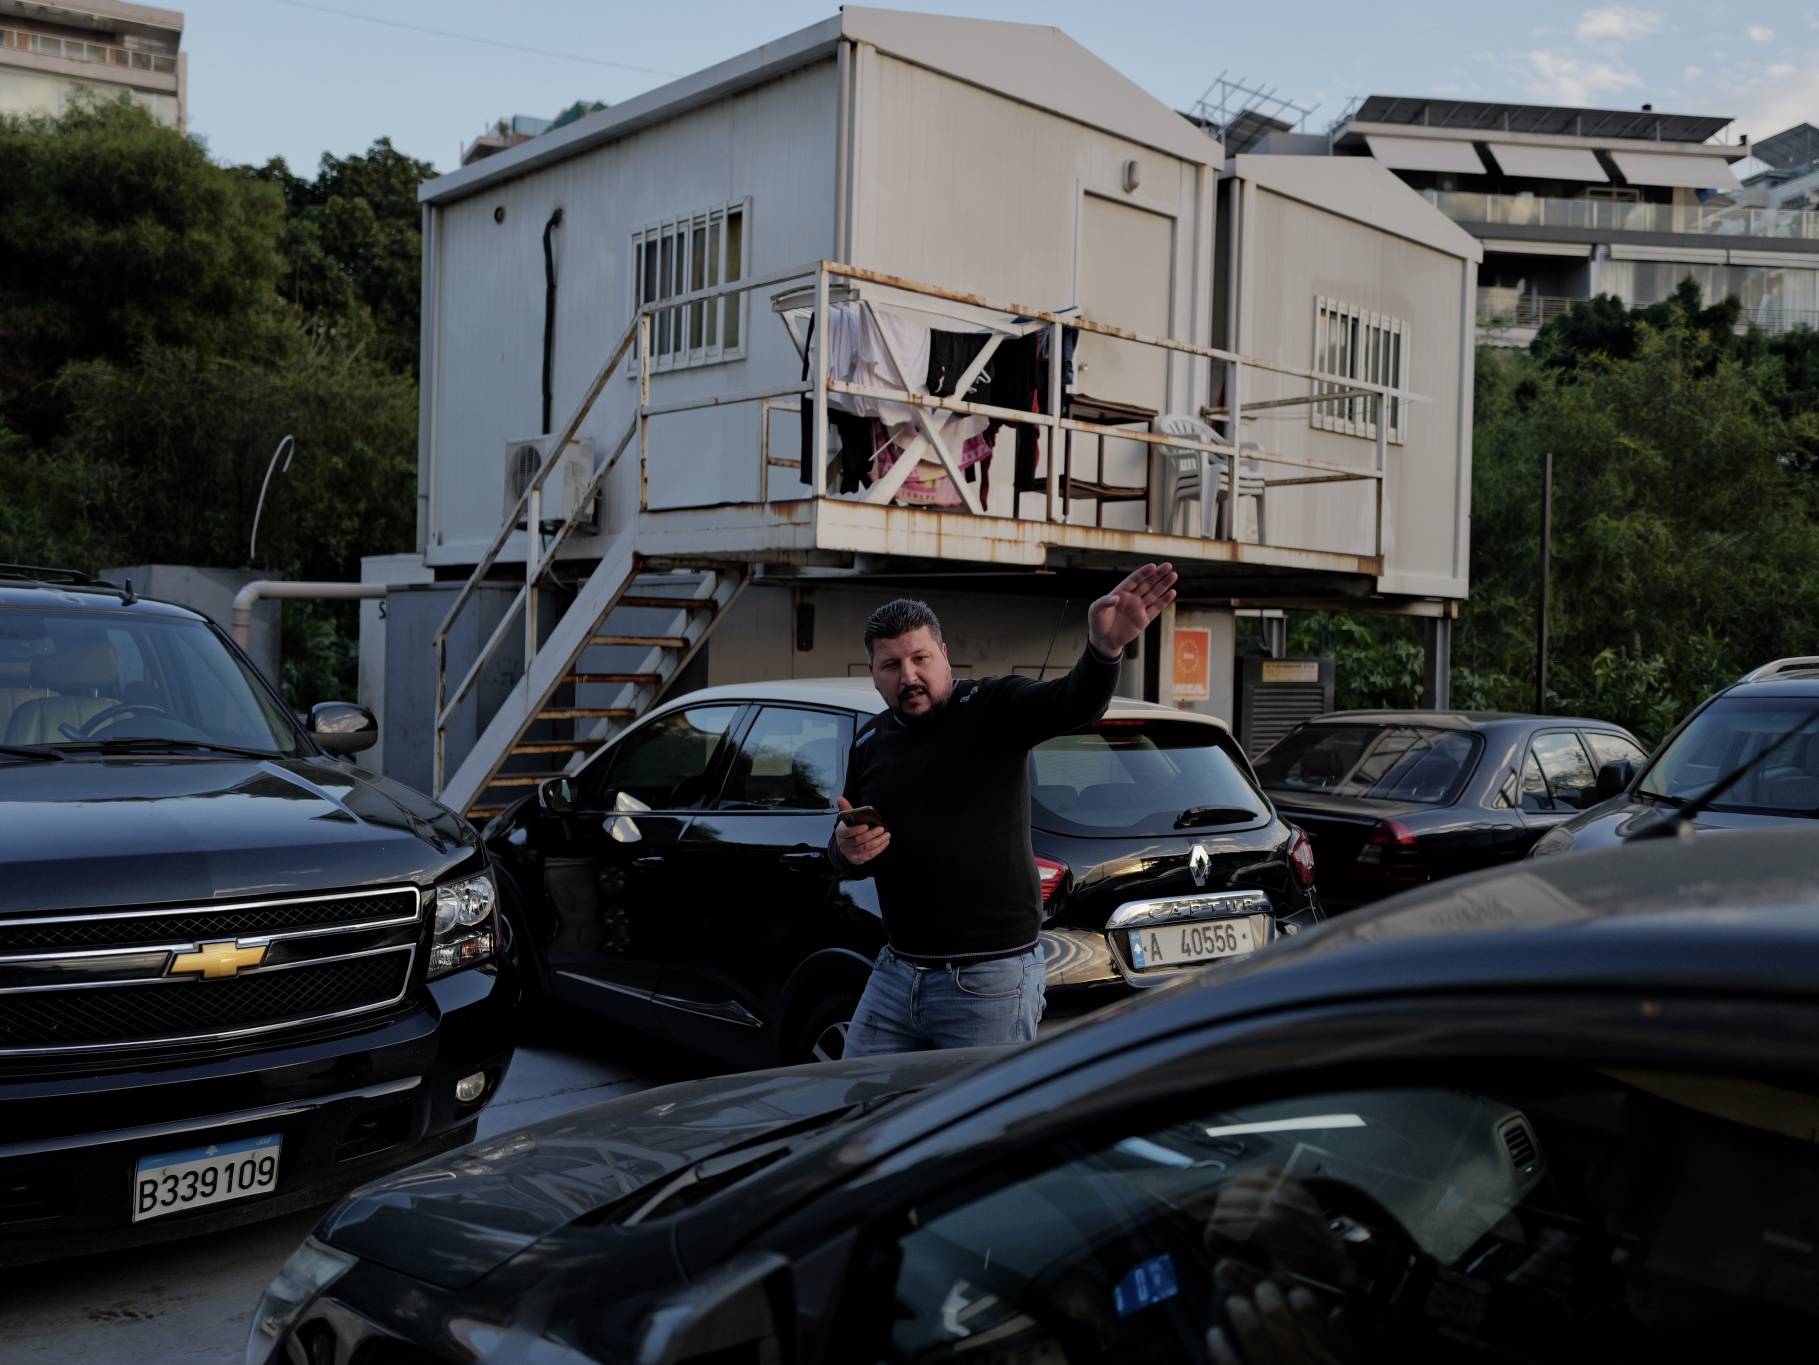 « L’Orient-Le Jour », c’est une cinquantaine de journalistes et environ 100 salariés. Dans le parking d’à peine quelques centaines de mètres carrés, Ali Daoud, notre voiturier aux yeux rieurs, joue tous les jours à Tetris avec les véhicules des employés.